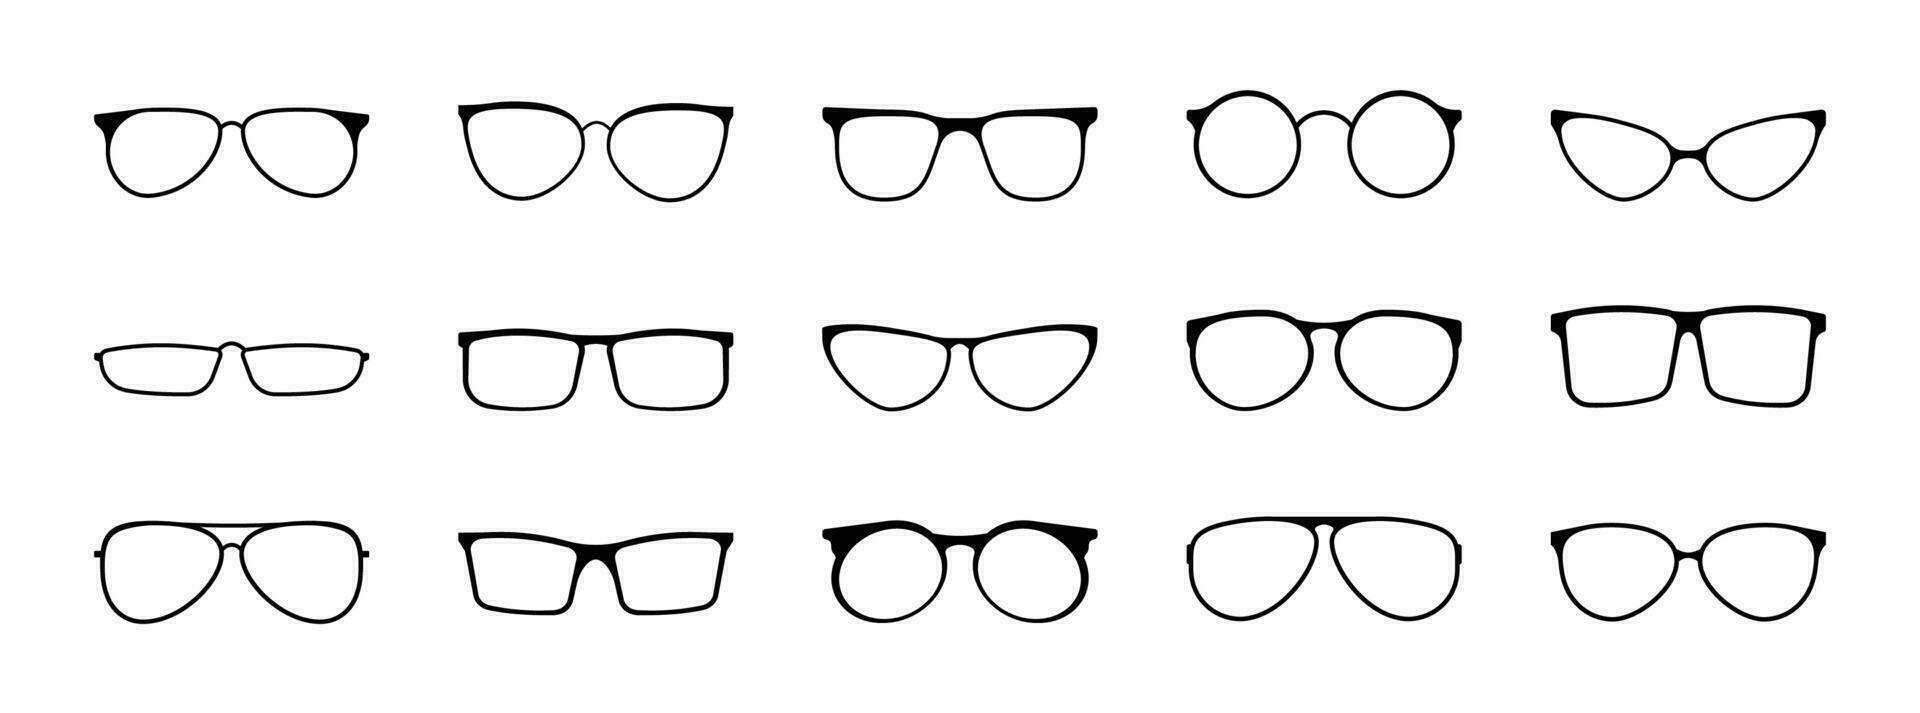 à moda óculos com Preto quadros do vários formas definir. oculos de sol acessório para proteger olhos a partir de Sol com à moda lentes e plástico vetor quadros.